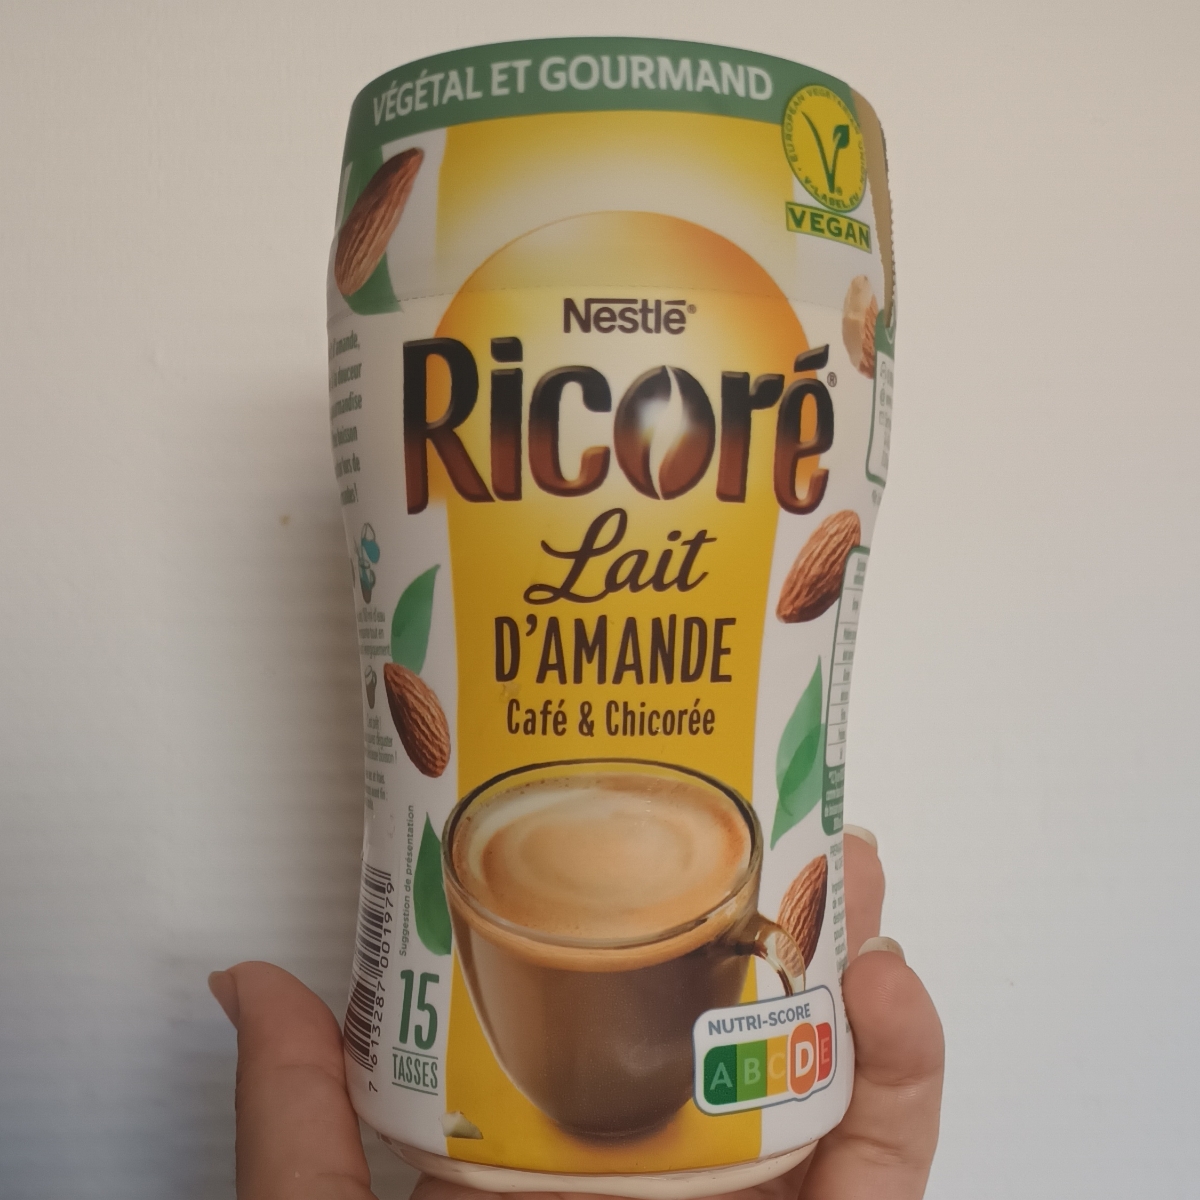 Nestlé Ricoré lait d'amande Reviews